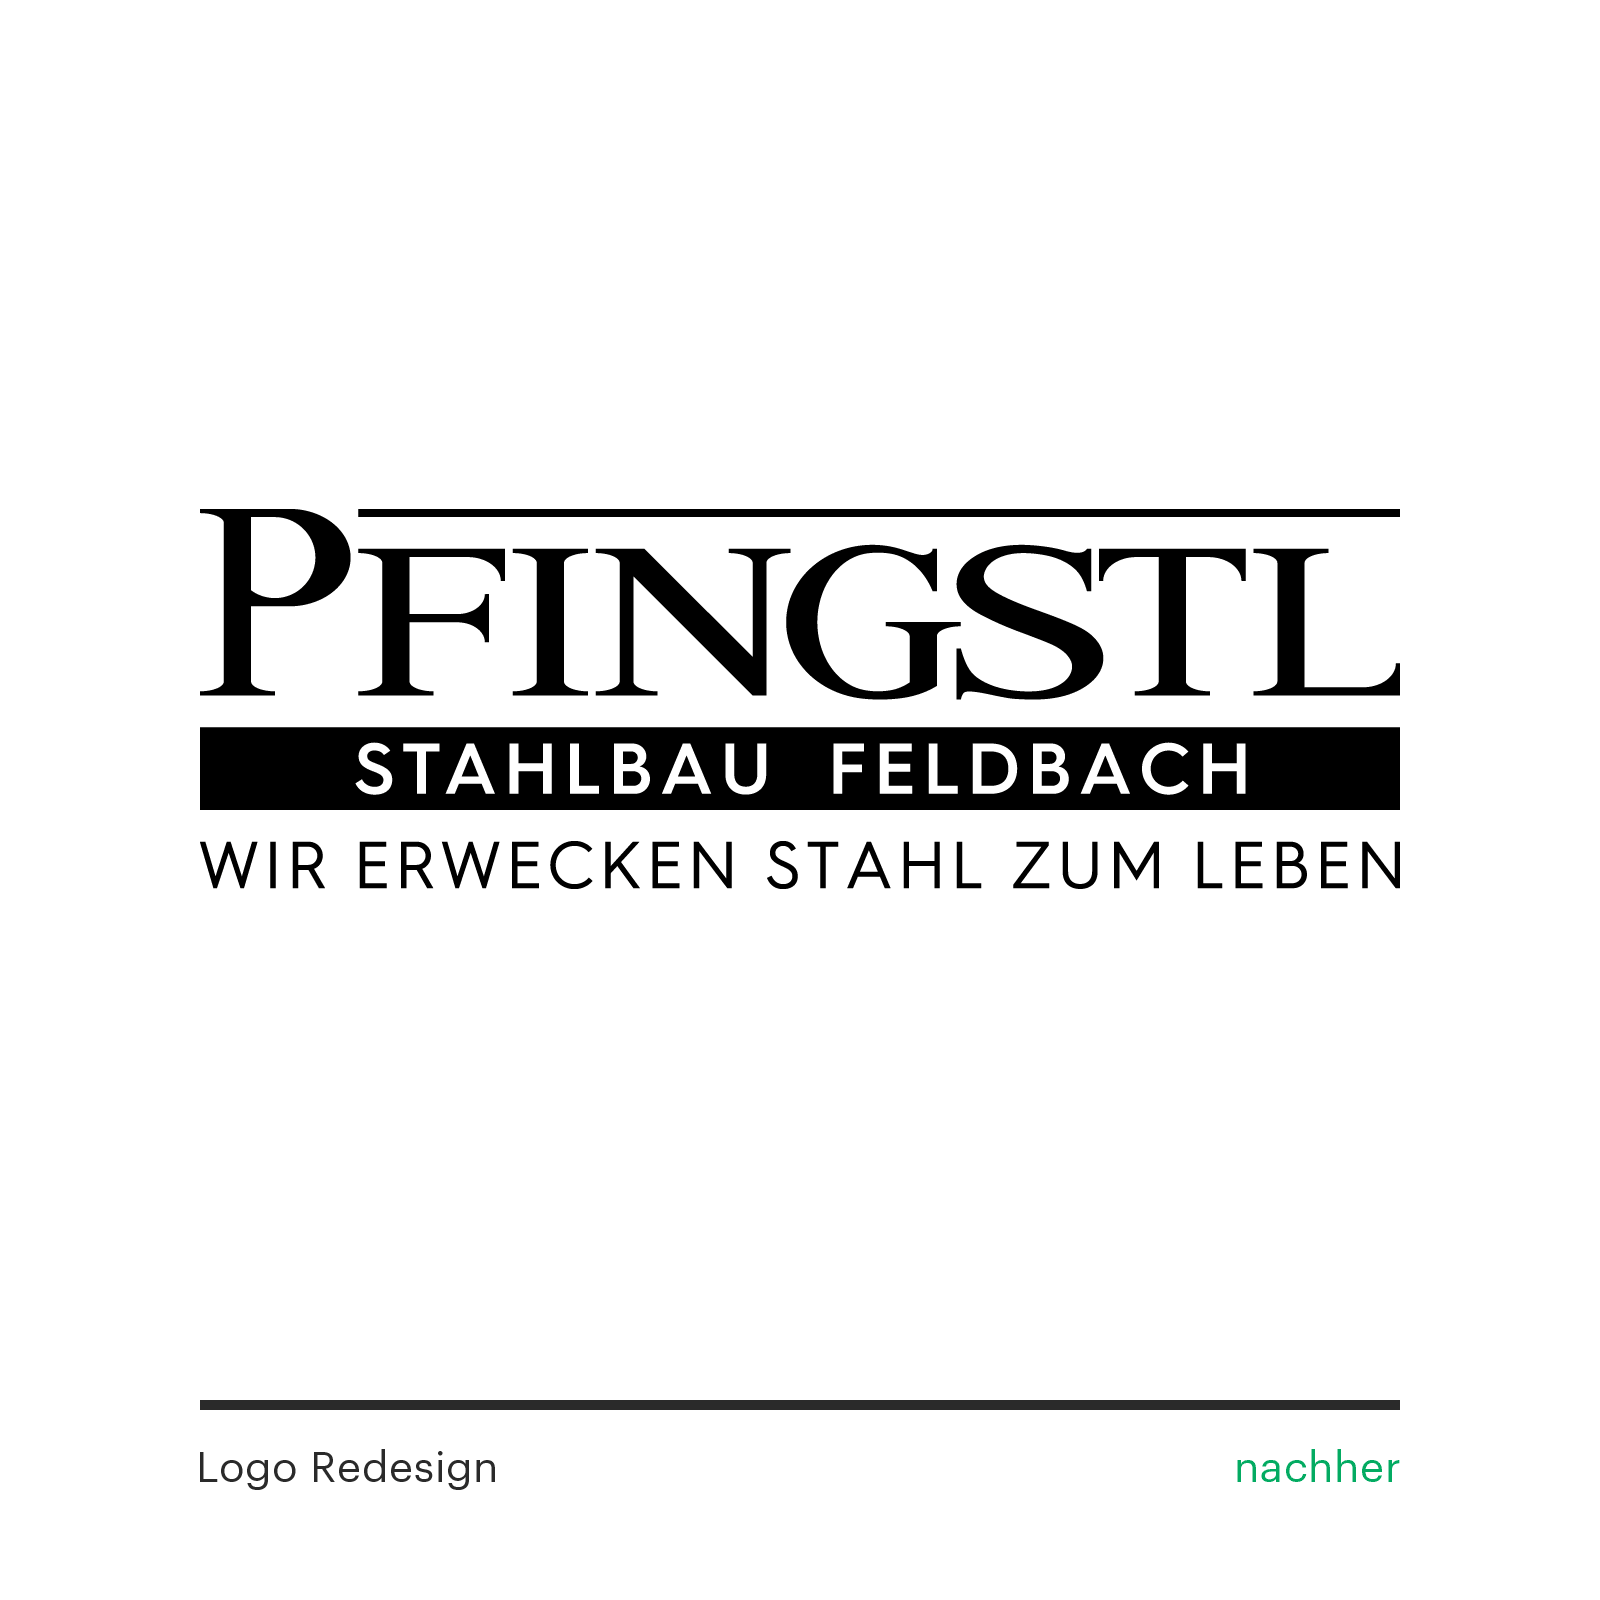 Pfingstl Stahlbau Feldbach